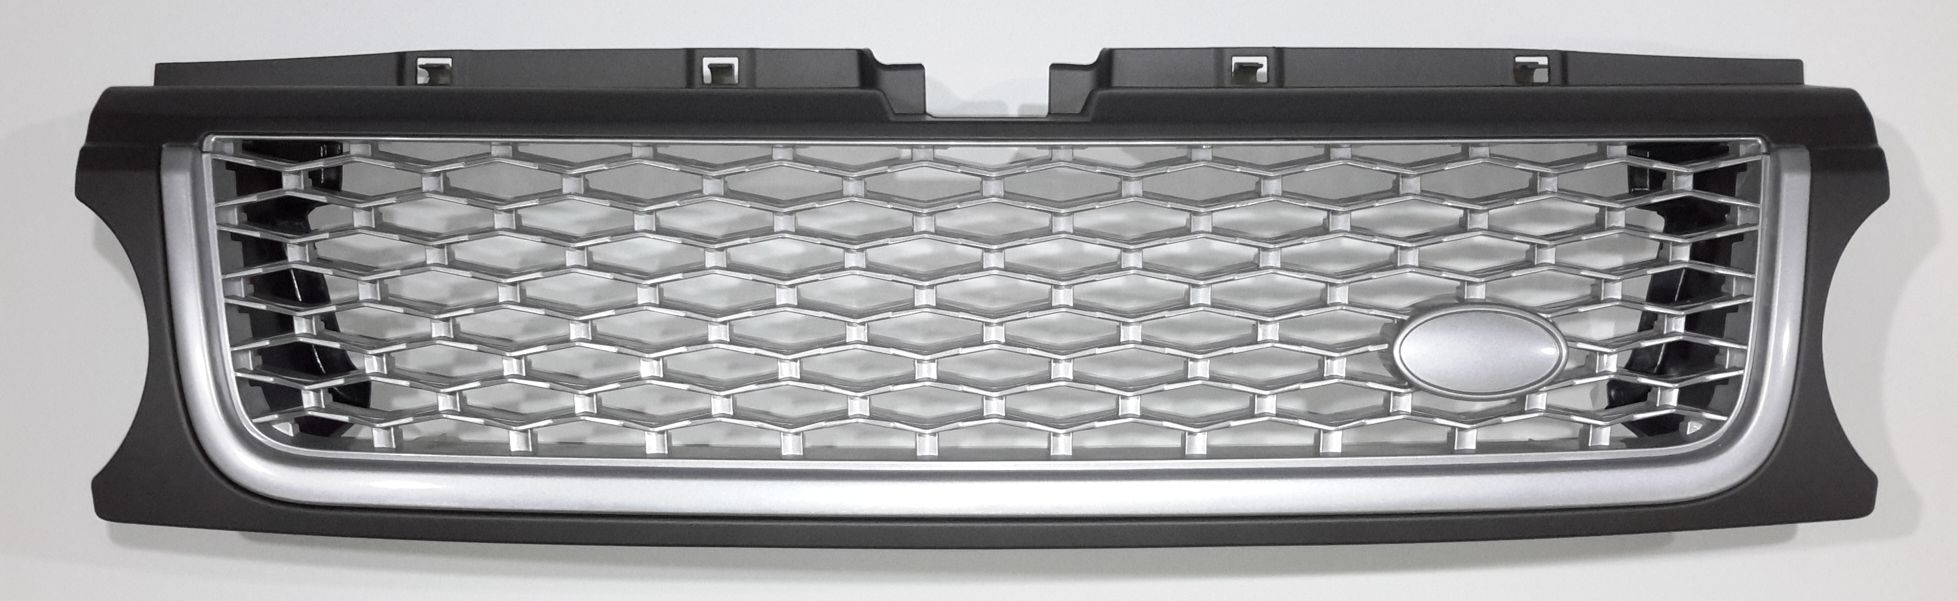 Решетка Range Rover Sport 2010 стиль Autobiography, Ориг. дизайн, Серый серебро-серебро